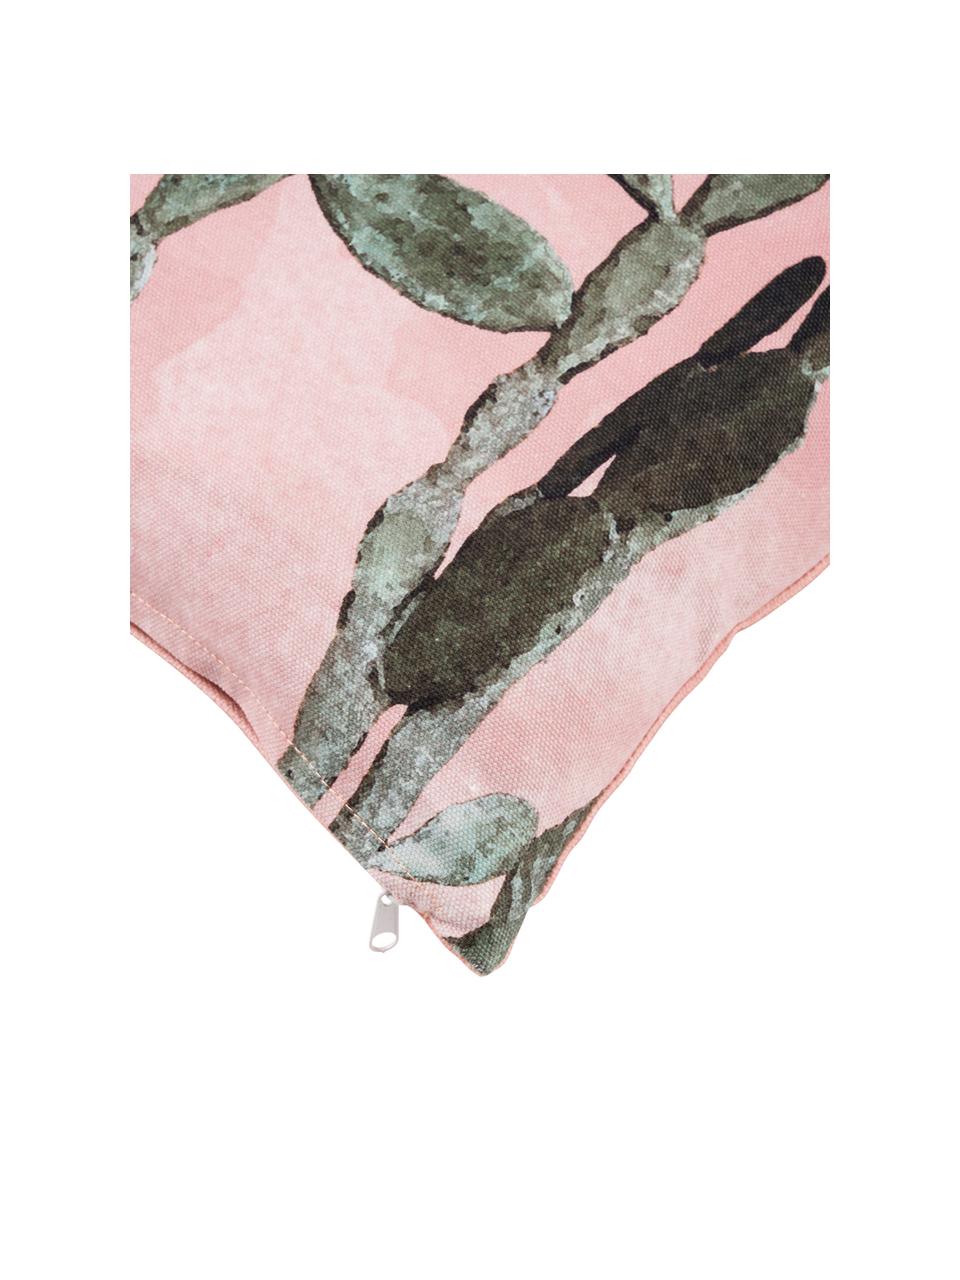 Kussenhoes Montezuma met cactusprint, 100% katoen, Roze, groen, 50 x 50 cm